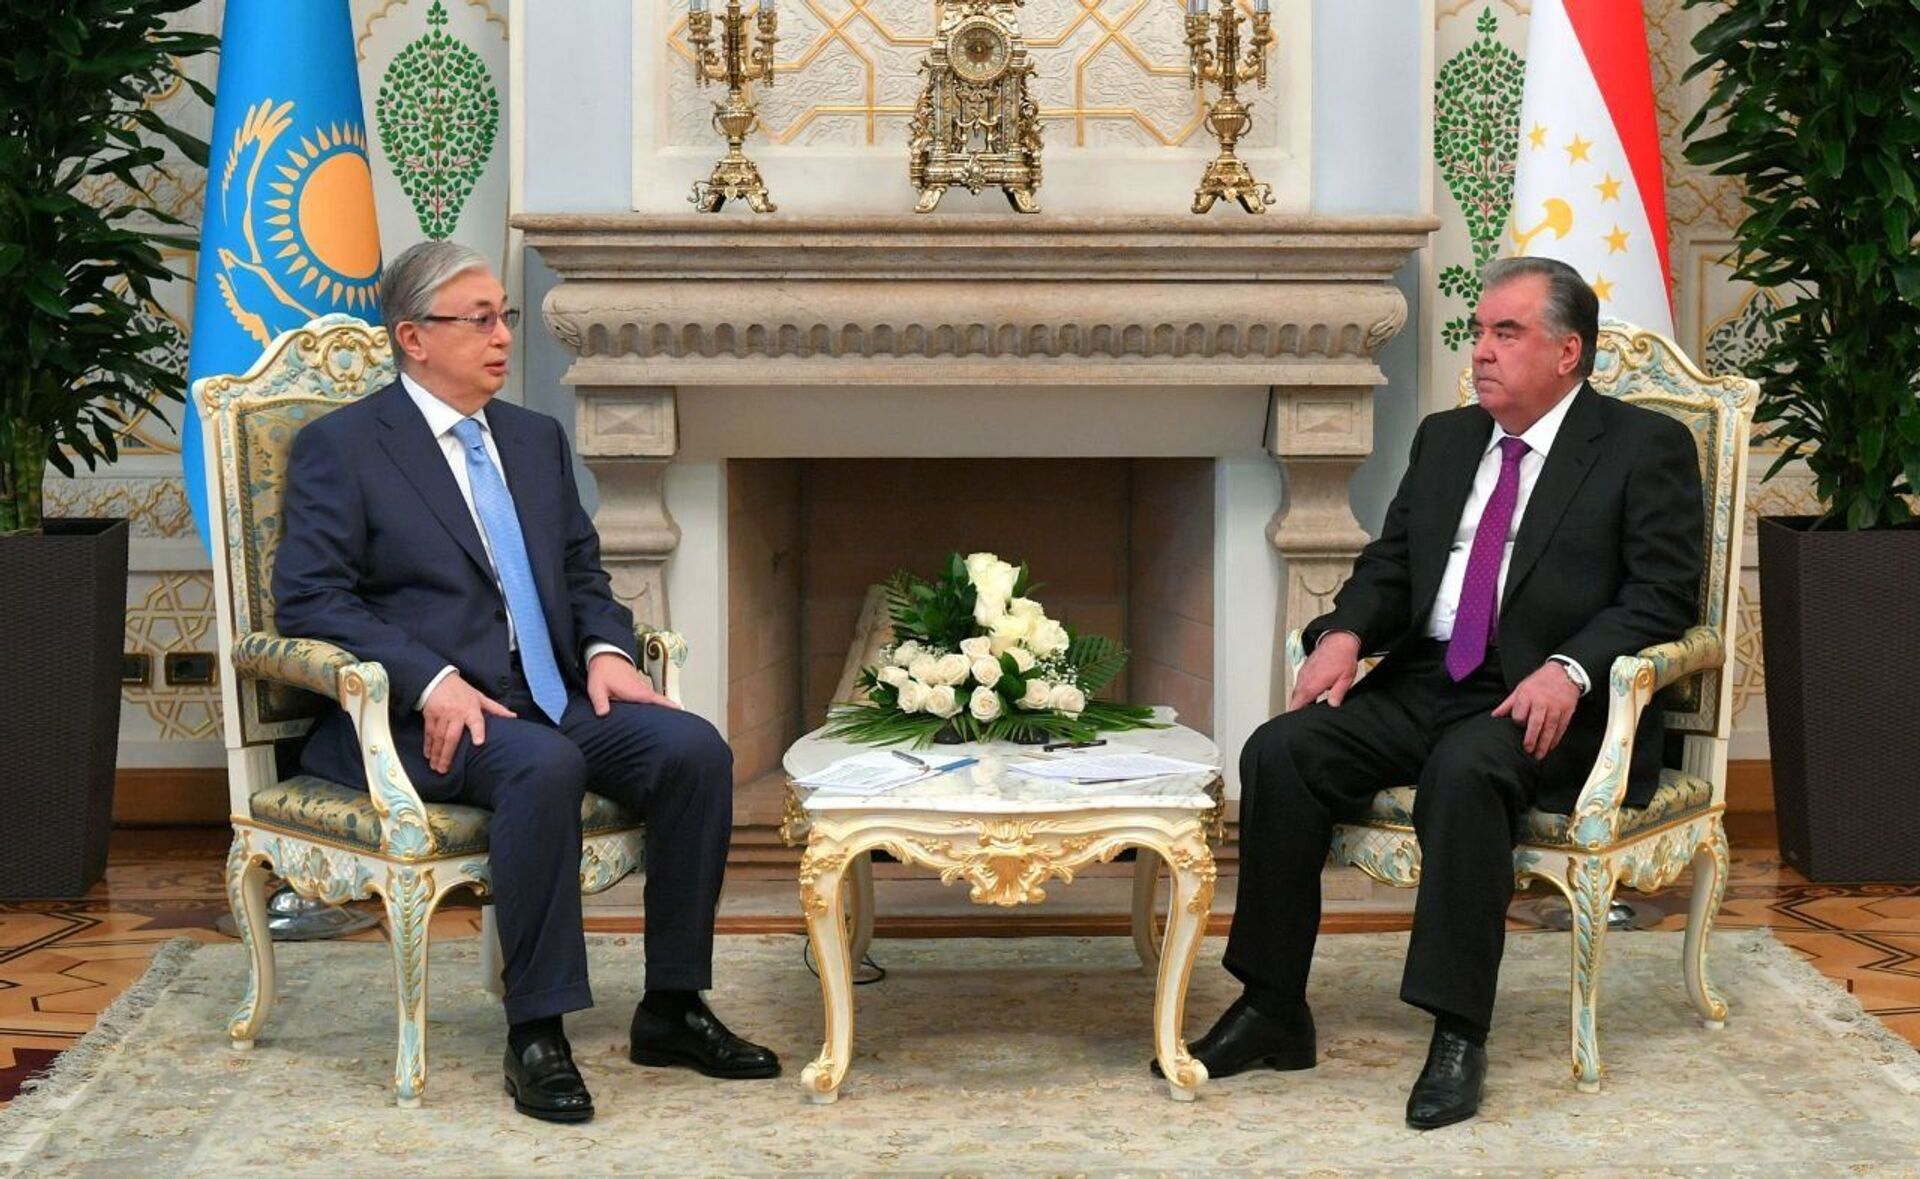 Токаев: провел плодотворные переговоры с президентом Таджикистана Рахмоном - Sputnik Казахстан, 1920, 20.05.2021